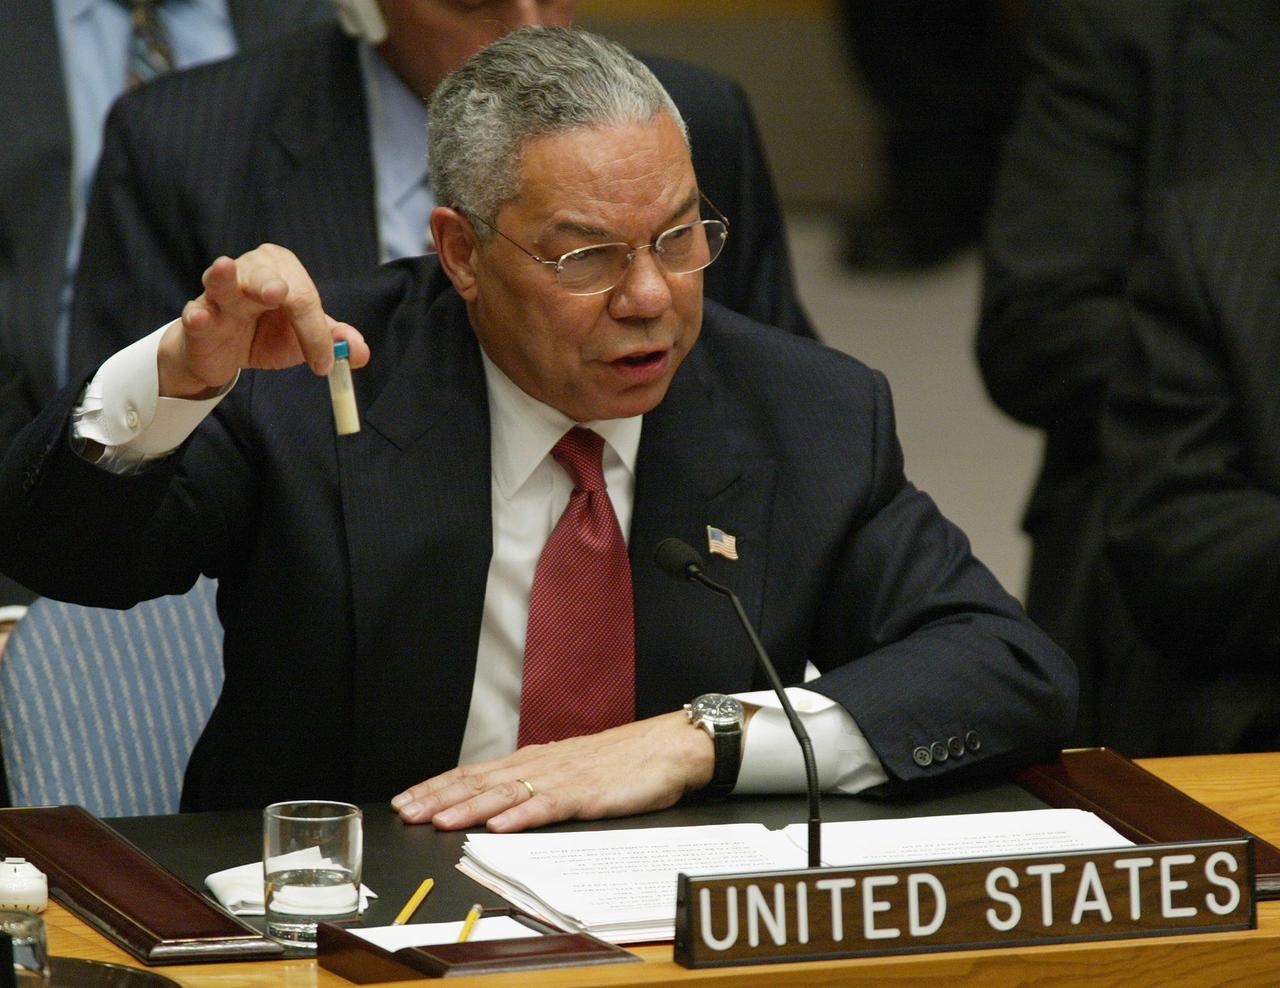 US-Außenminister Colin Powell sitzt im UN-Sicherheitsrat und hält eine kleines Fläschchen mit einer Substanz hoch.